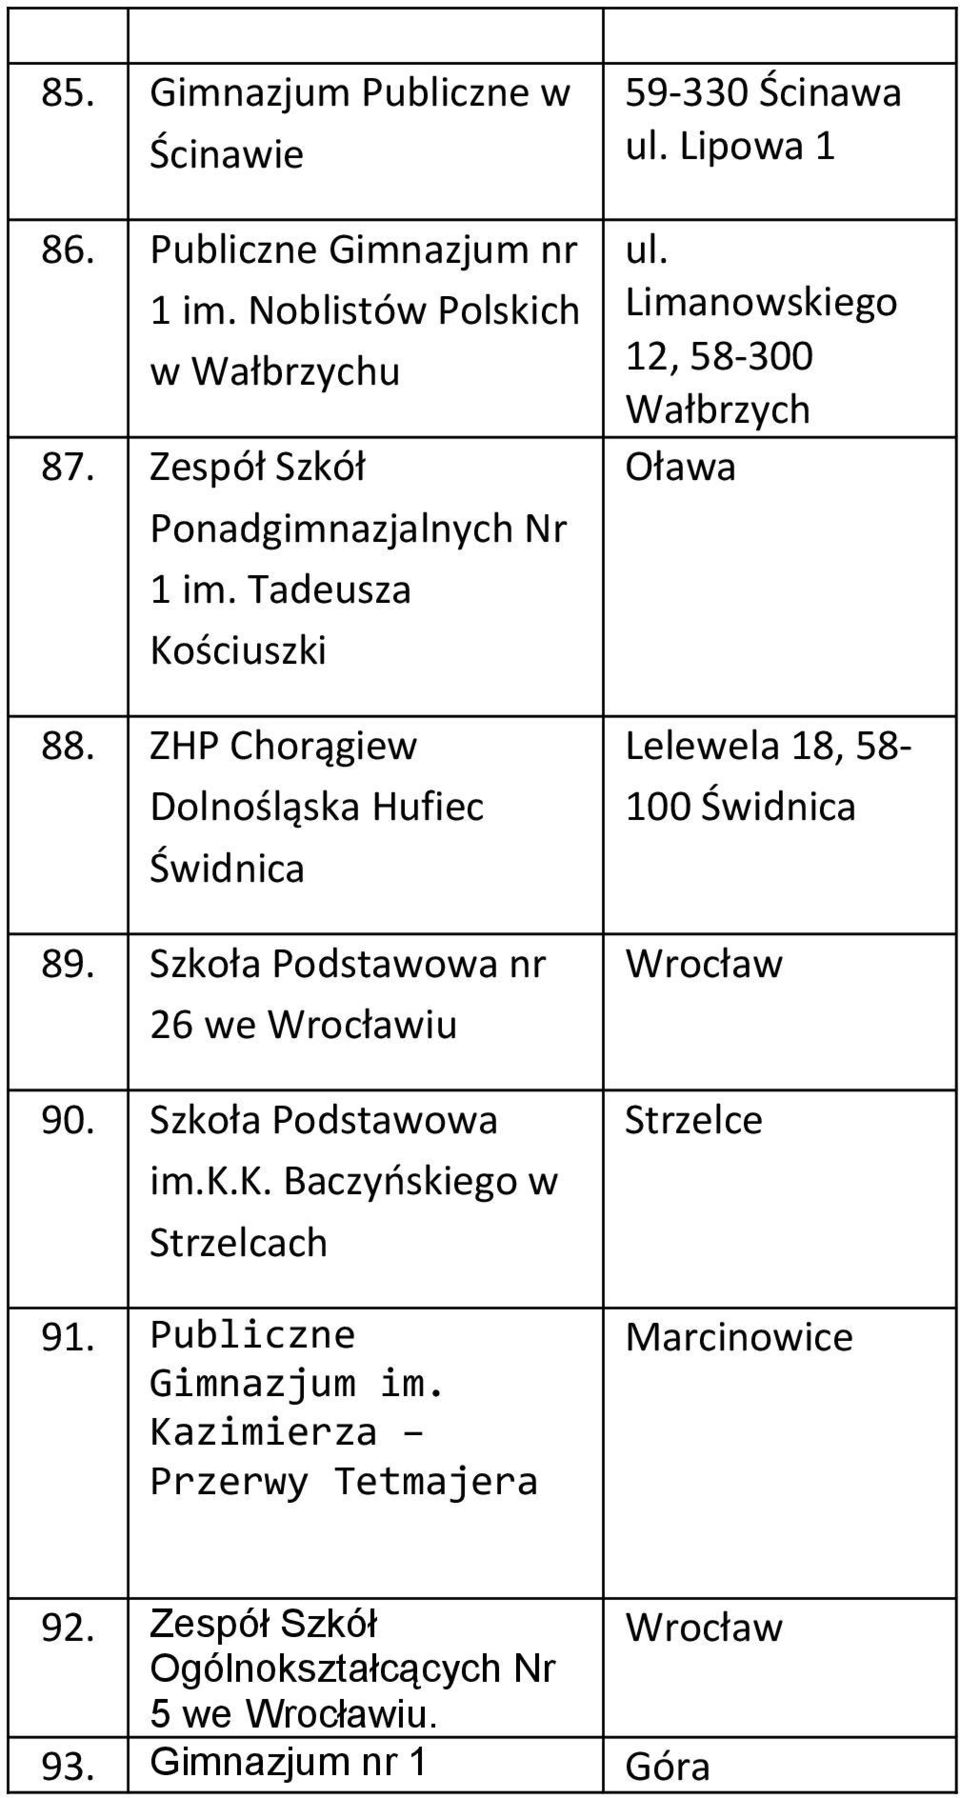 Szkoła Podstawowa nr 26 we iu 90. Szkoła Podstawowa im.k.k. Baczyńskiego w Strzelcach 91. Publiczne Gimnazjum im.